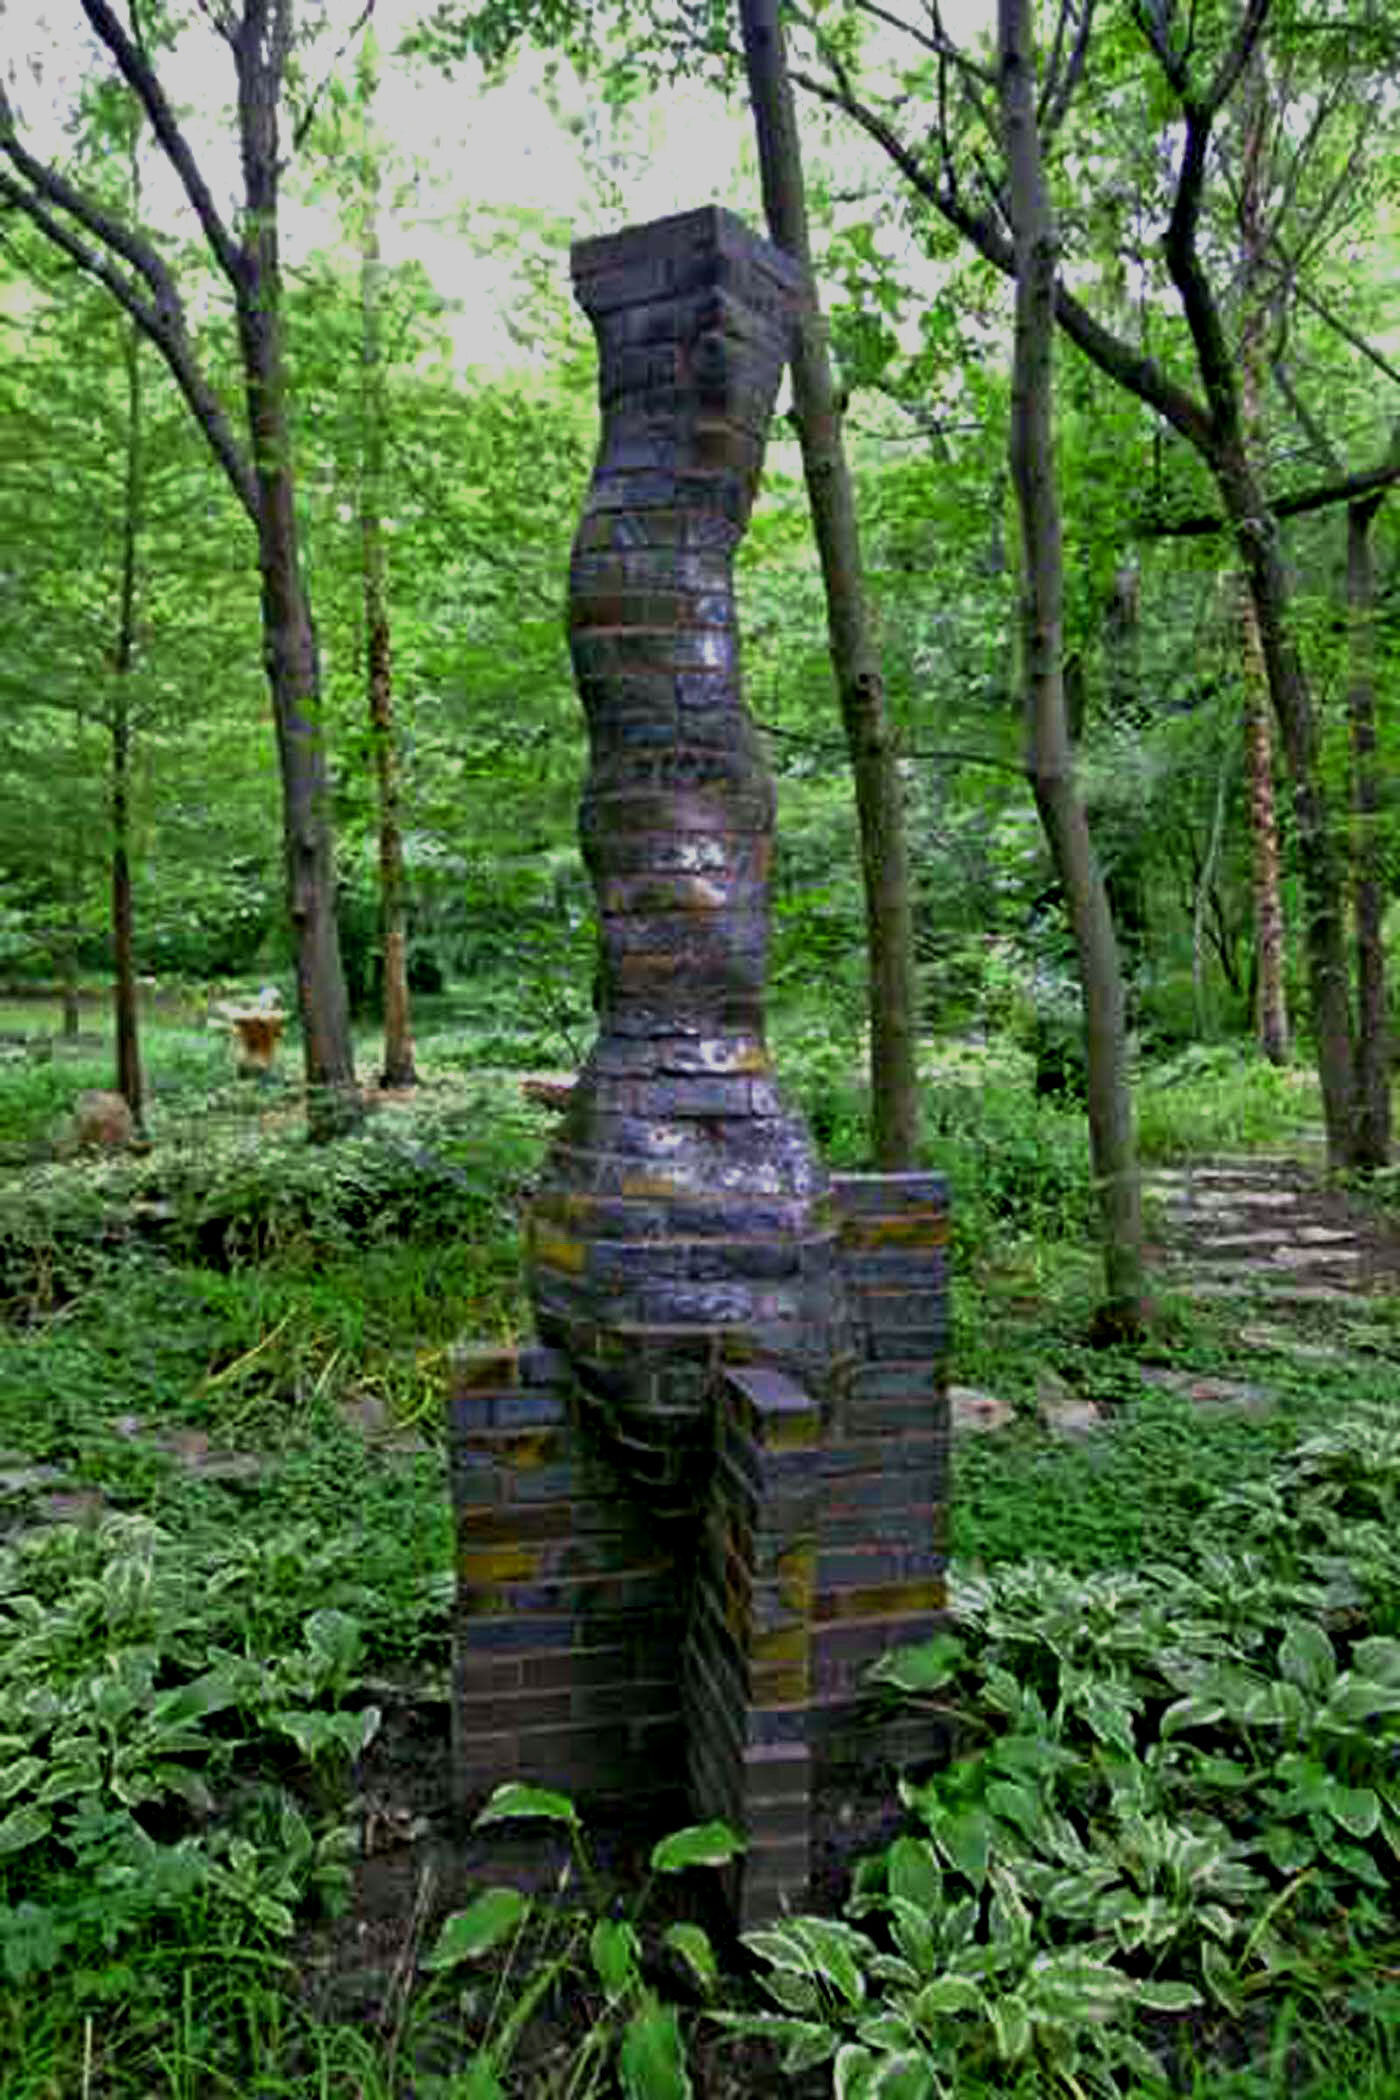 Column on buttressed pedestal in garden